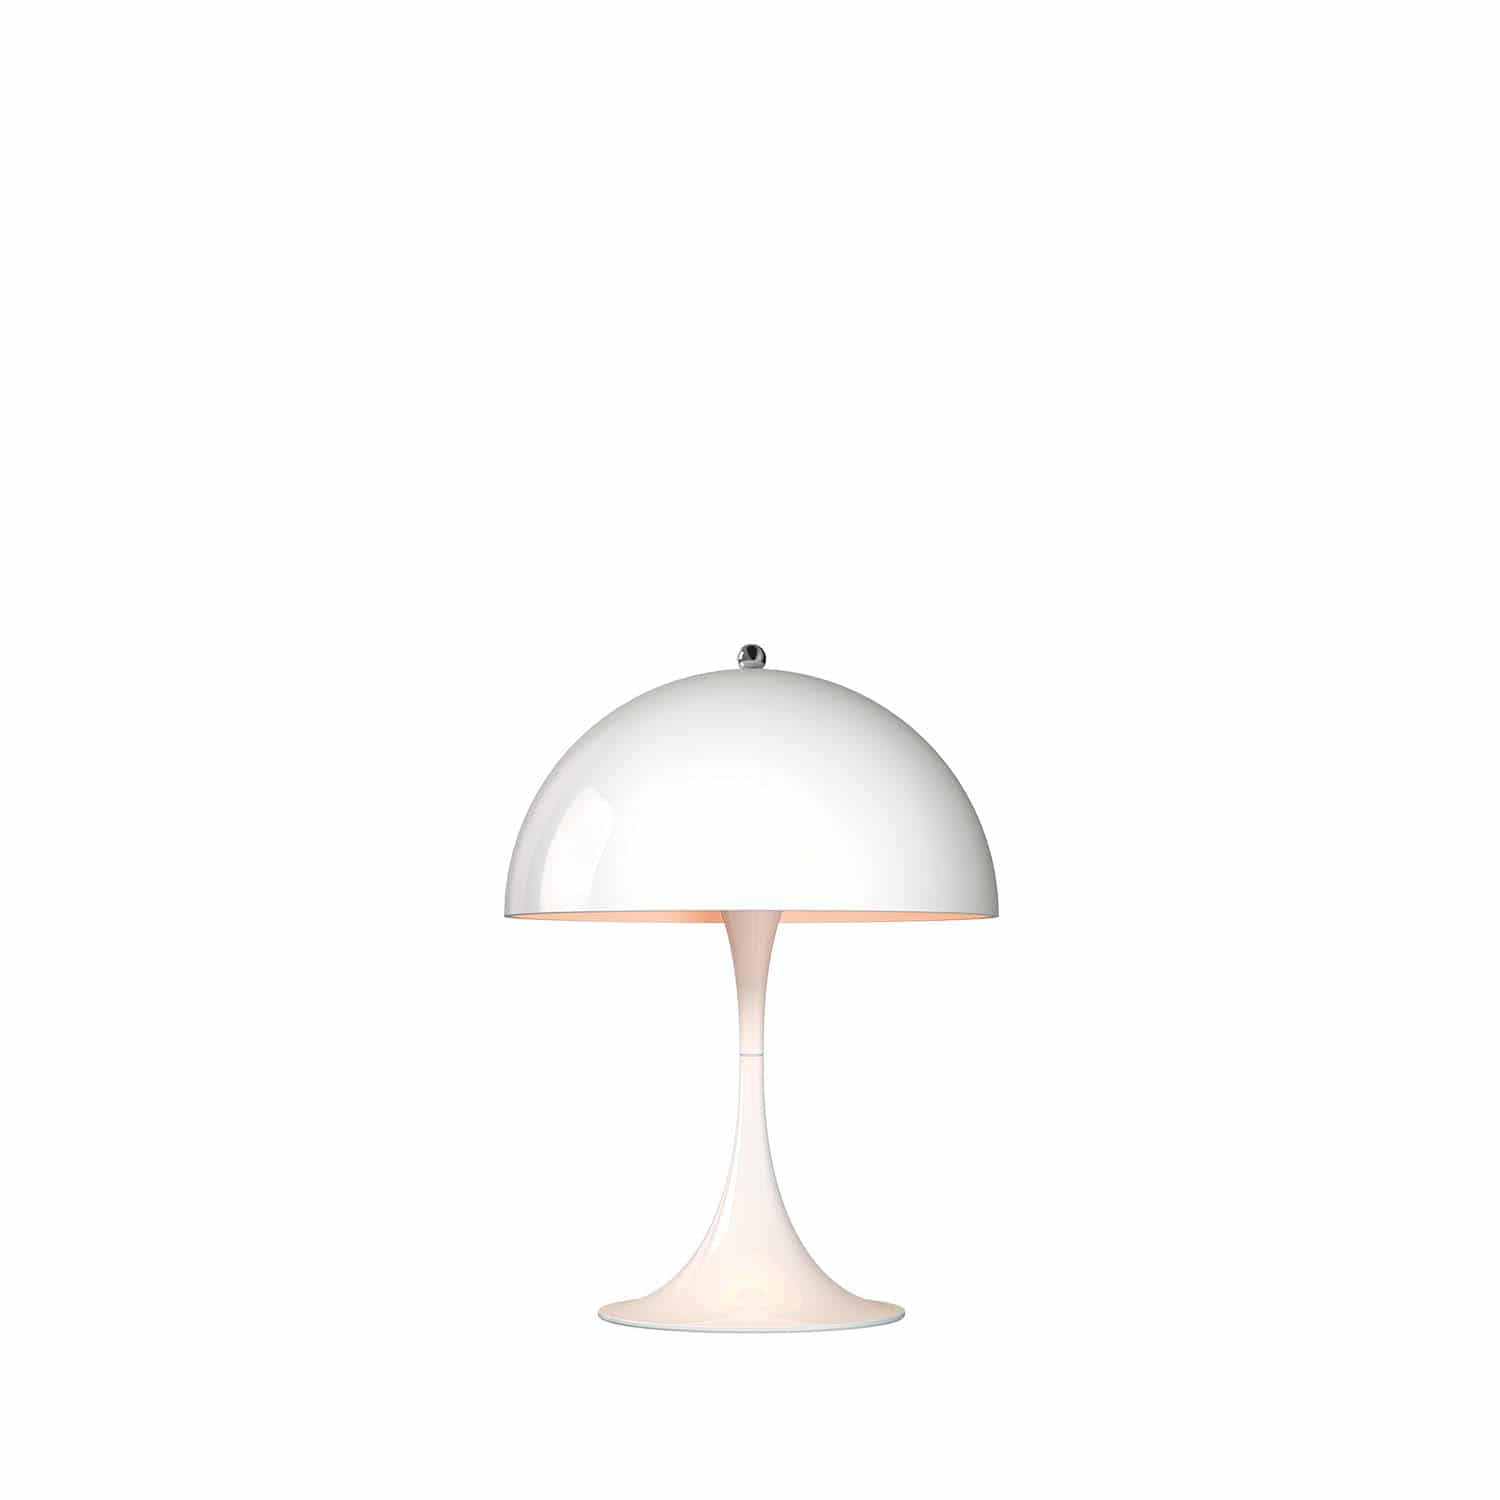 Panthella 250 Table Lamp, White